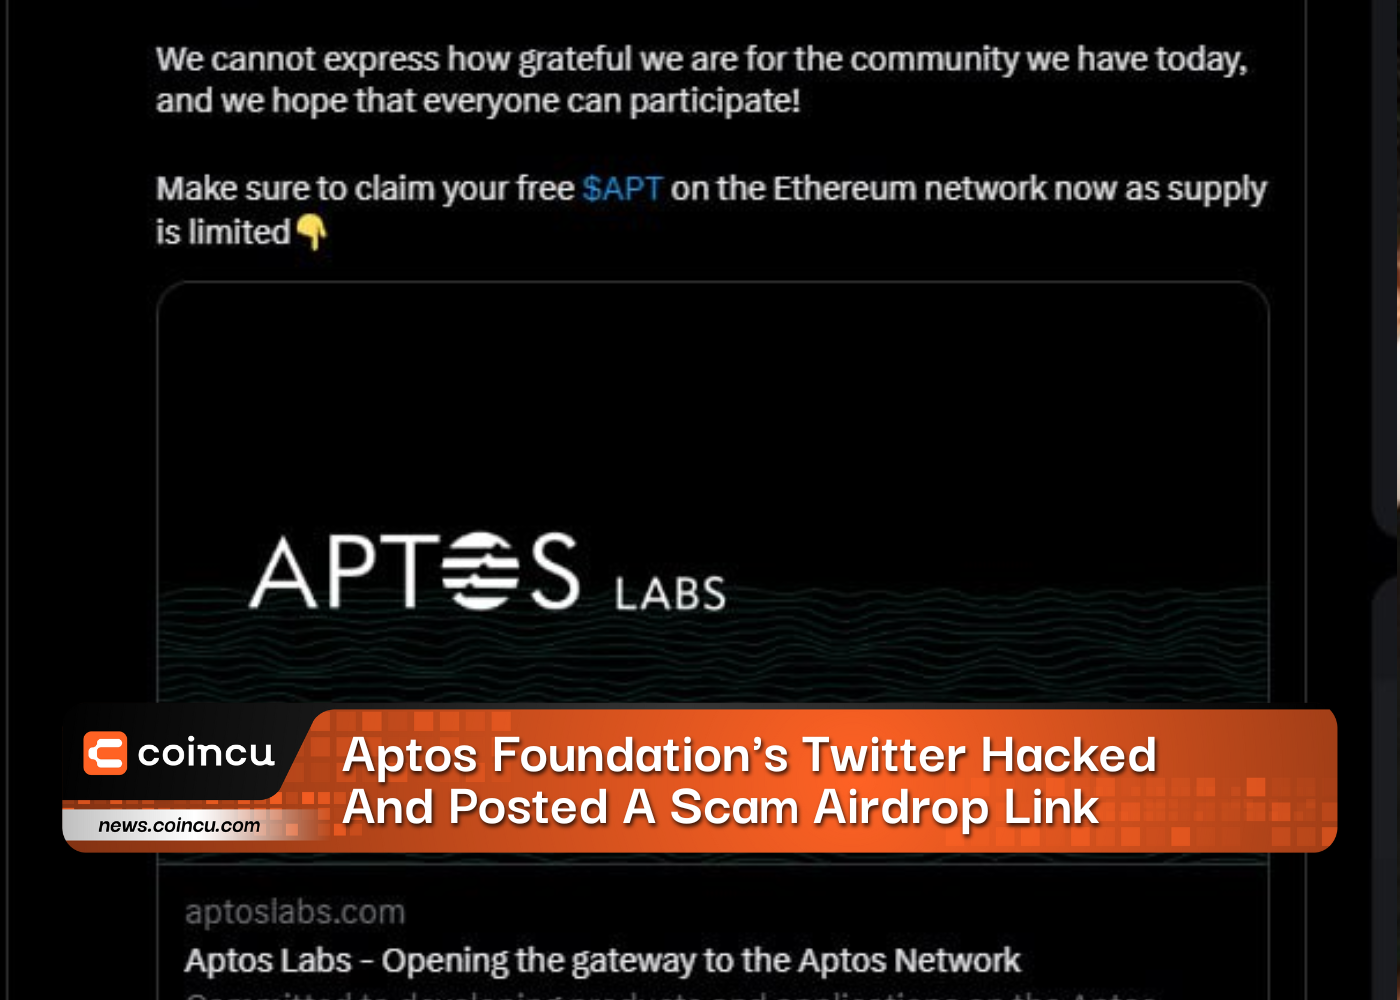 El Twitter de la Fundación Aptos fue pirateado y publicó un enlace de Airdrop fraudulento